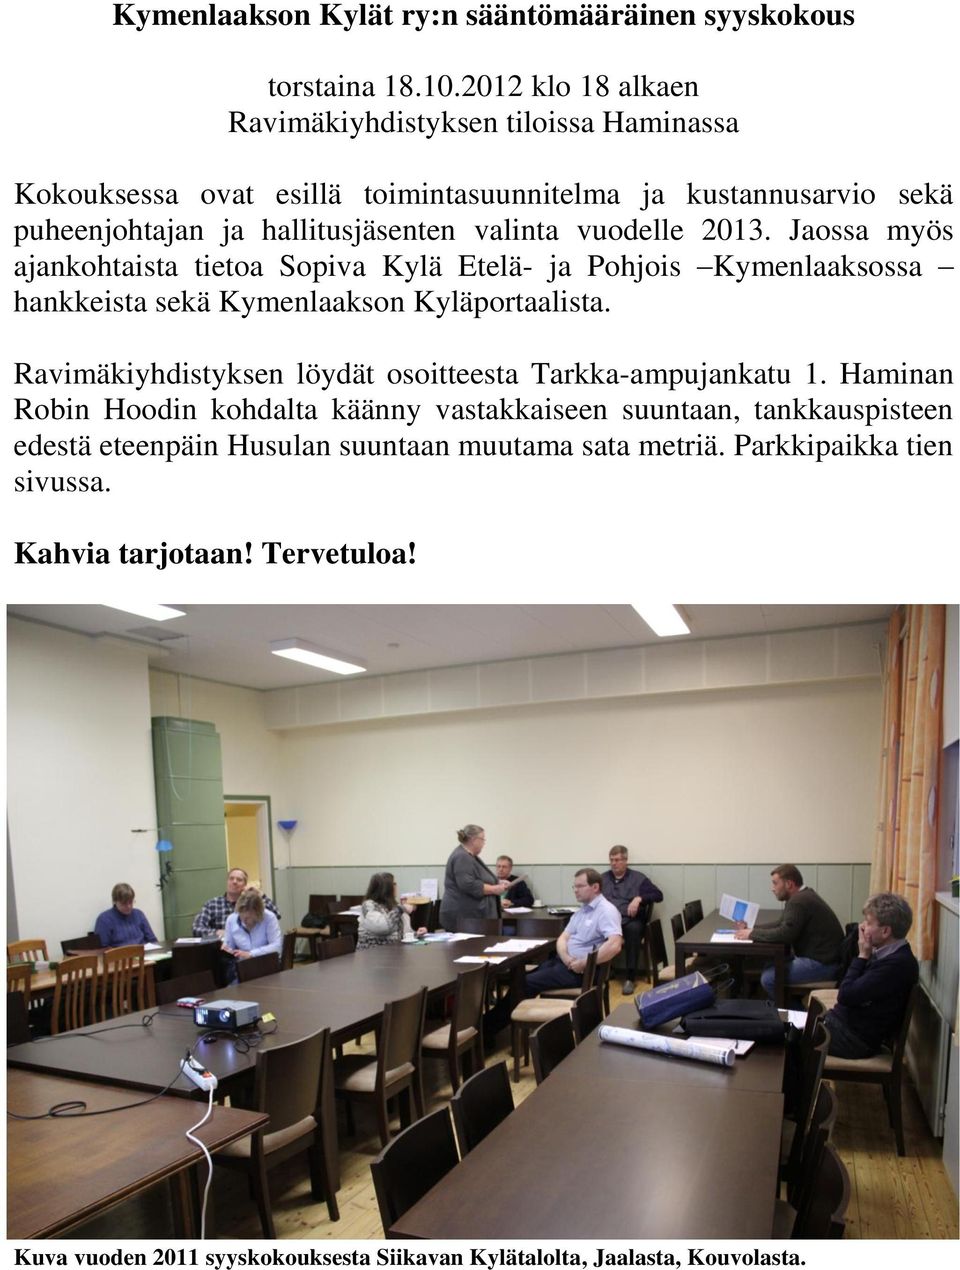 vuodelle 2013. Jaossa myös ajankohtaista tietoa Sopiva Kylä Etelä- ja Pohjois Kymenlaaksossa hankkeista sekä Kymenlaakson Kyläportaalista.